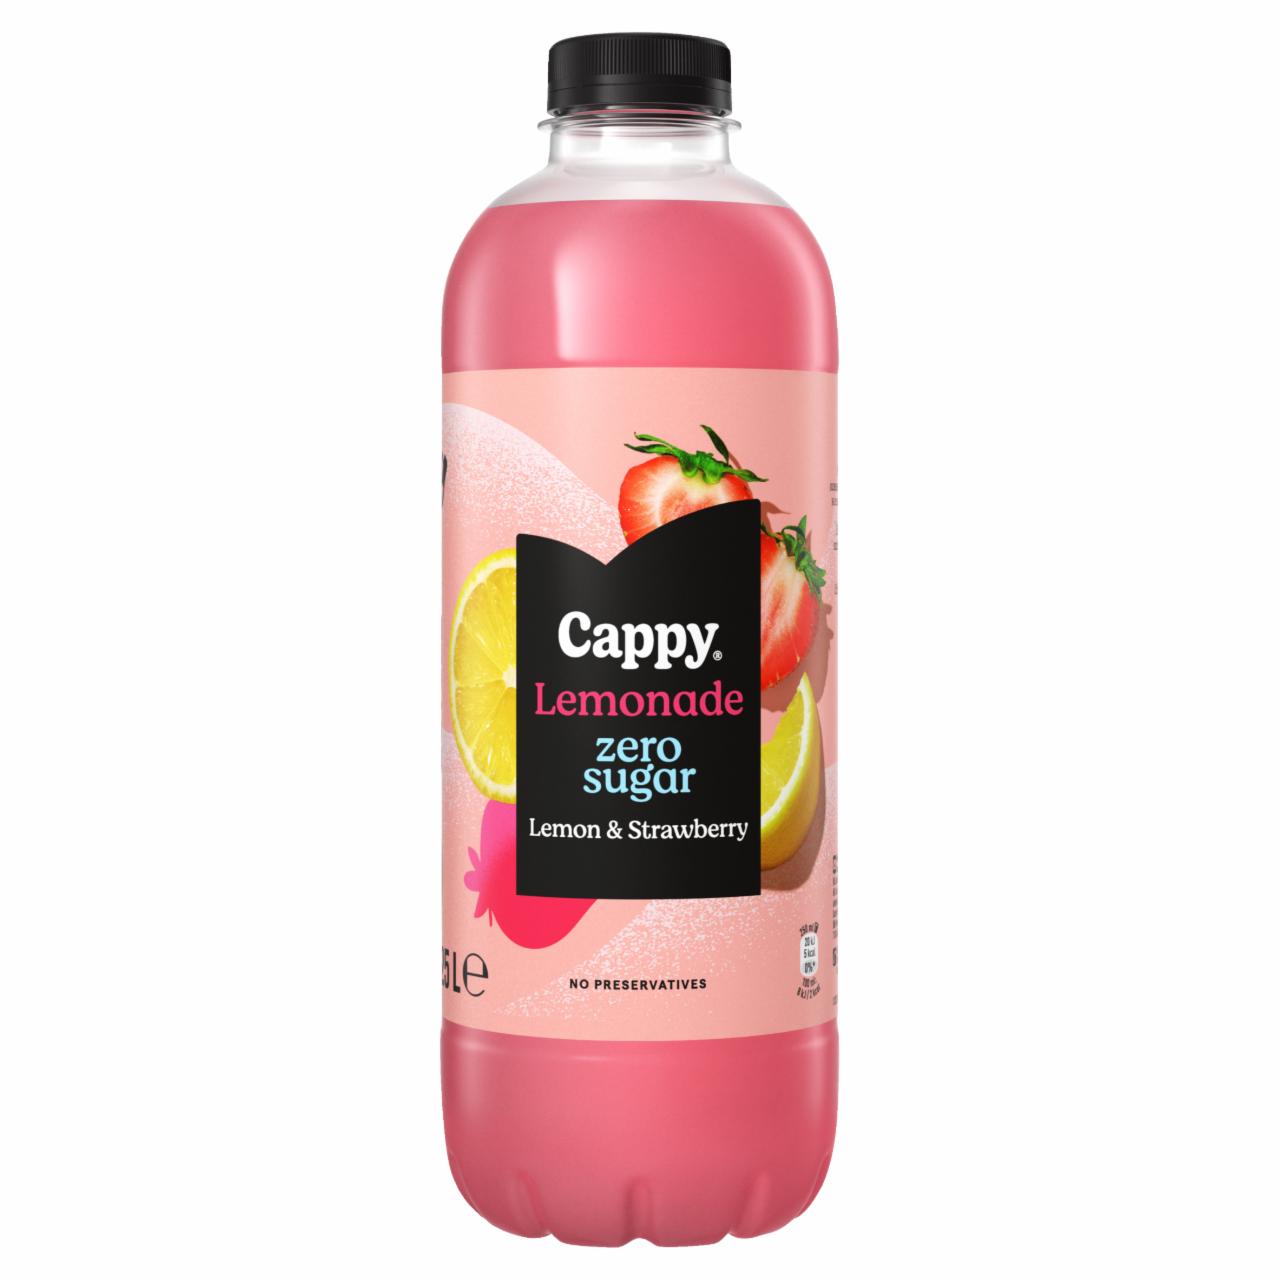 Képek - Cappy Lemonade szénsavmentes citromos üdítőital eperlével és édesítőszerekkel 1,25 l